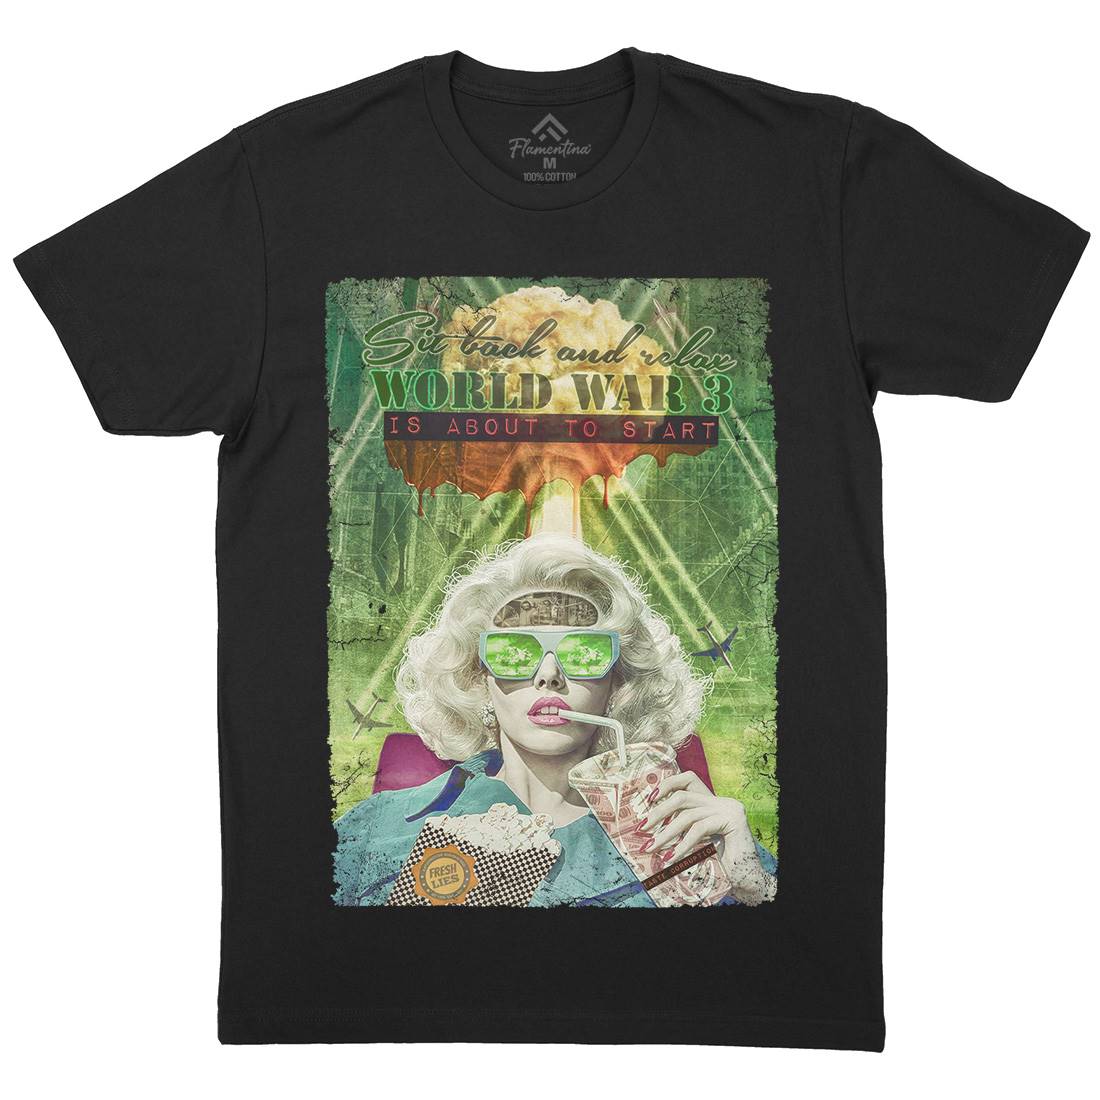 Ww3 Mens Organic Crew Neck T-Shirt Illuminati A944